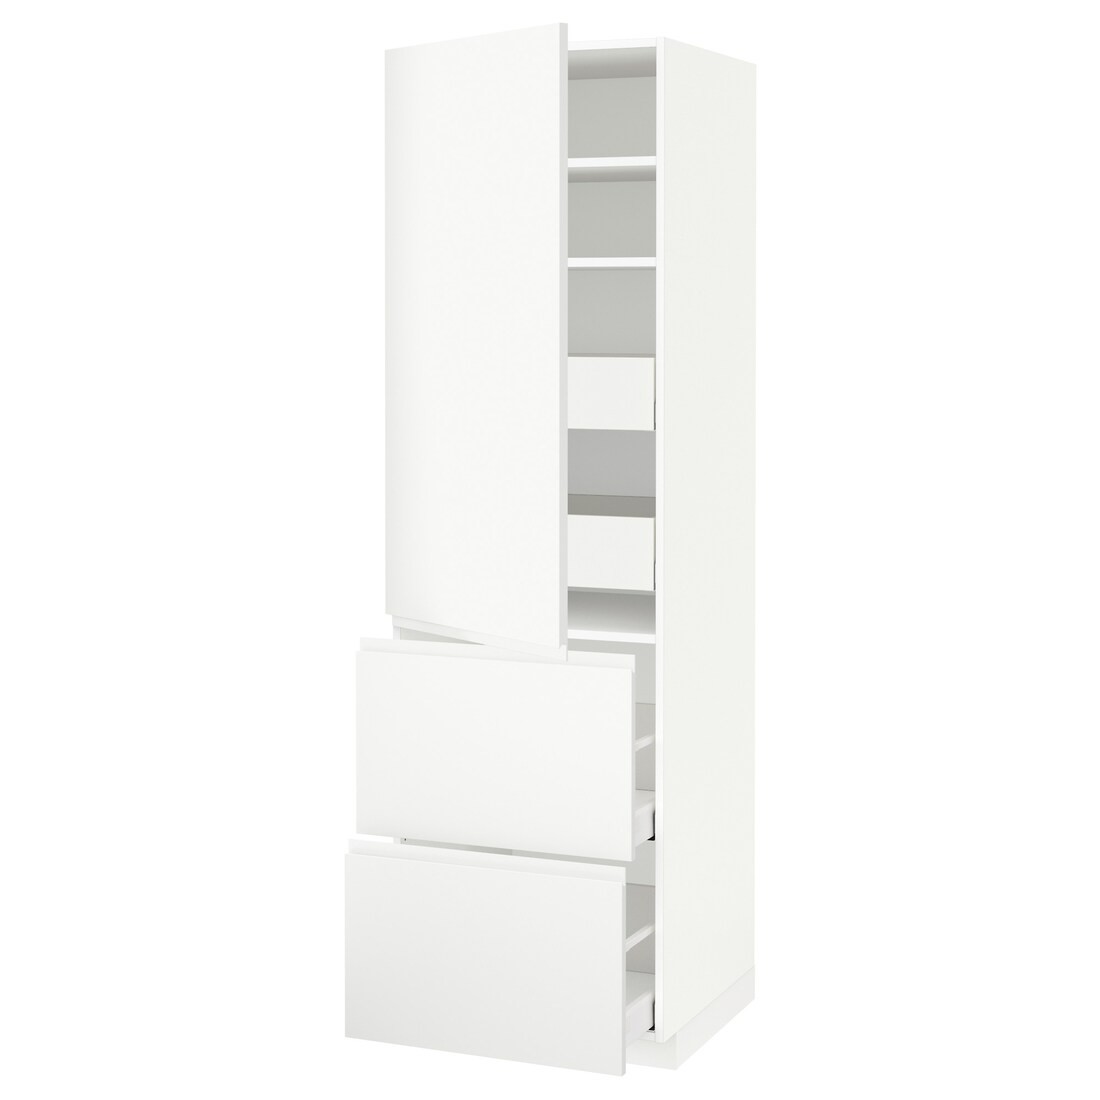 IKEA METOD МЕТОД / MAXIMERA МАКСИМЕРА Высокий шкаф с полками / ящиками, белый / Voxtorp матовый белый, 60x60x200 см 89353022 | 893.530.22